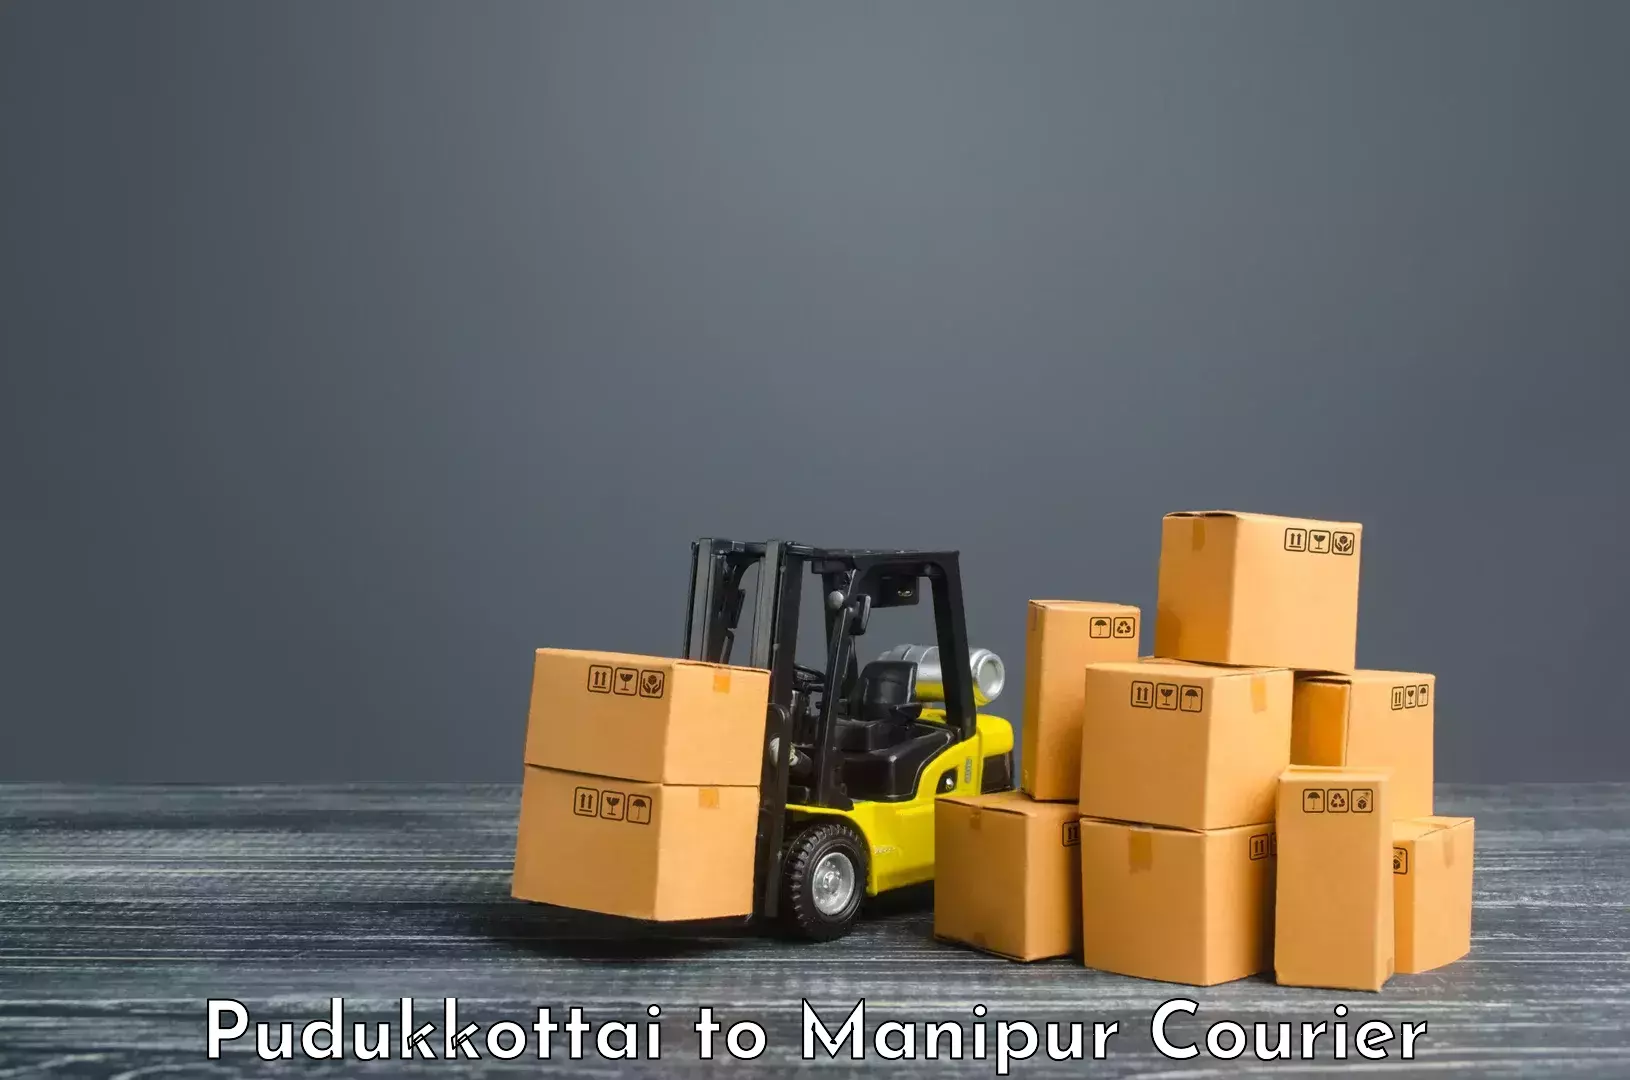 Efficient parcel tracking Pudukkottai to Manipur